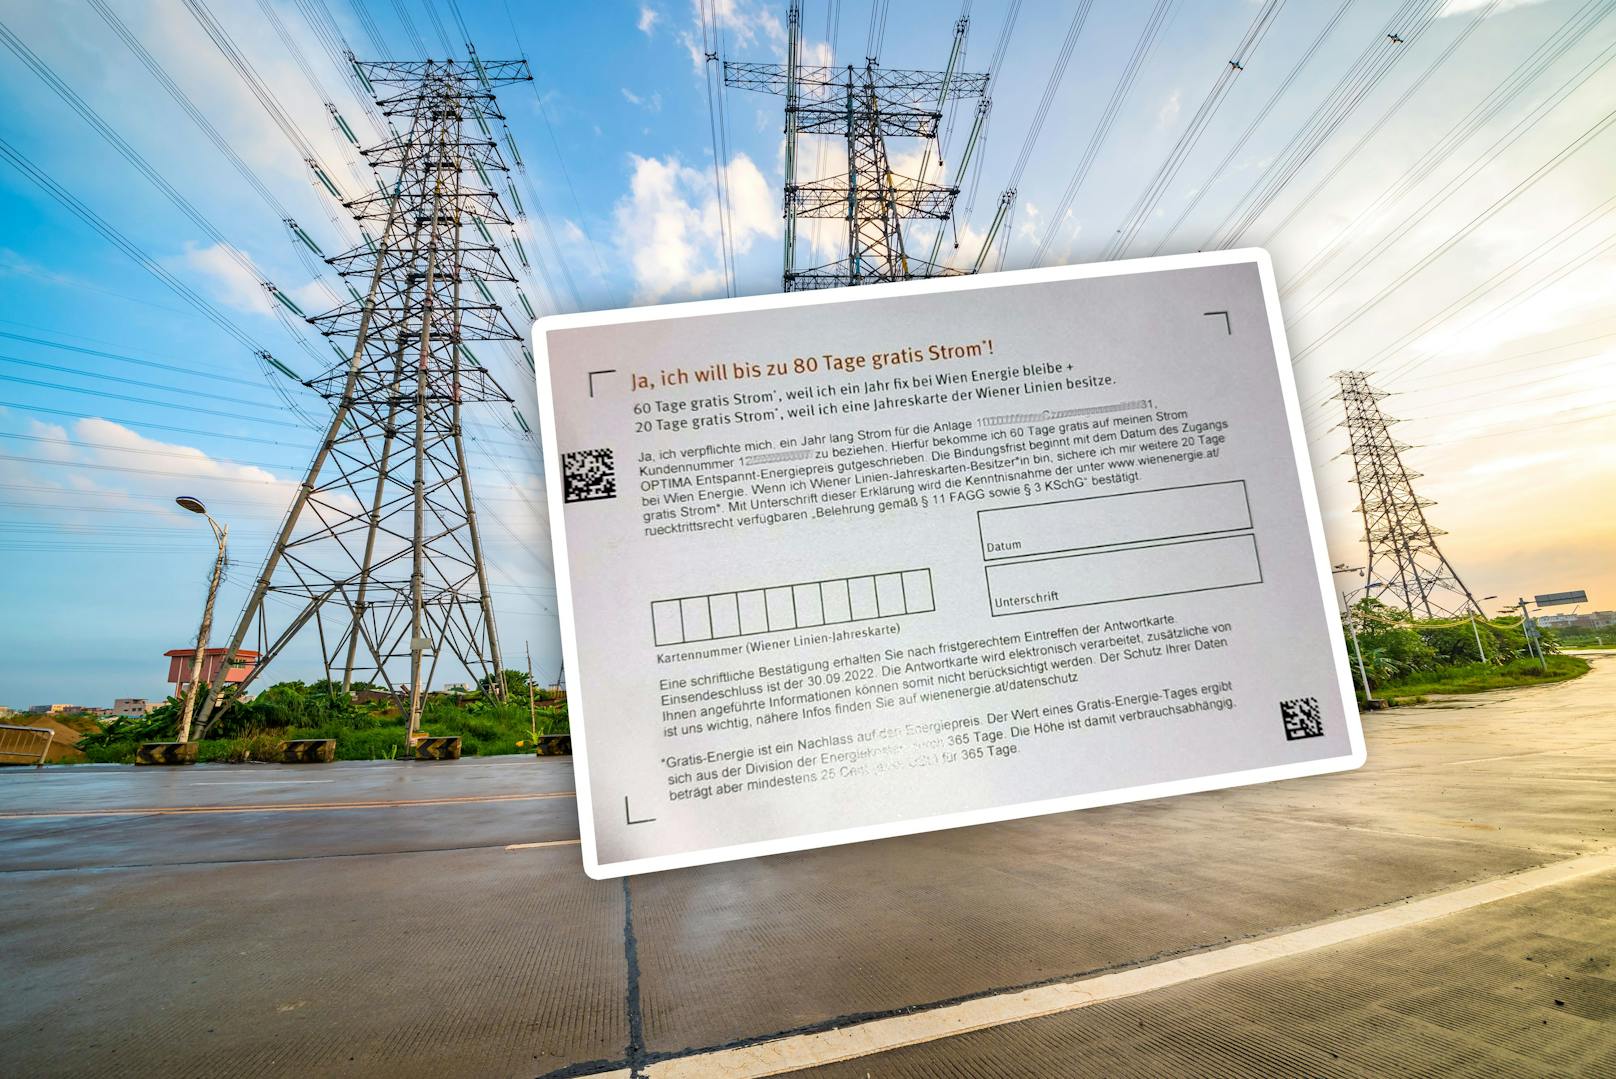 Der Brief des Wiener Energie-Anbieters Wien Energie sorgt derzeit für heftige Diskussionen.